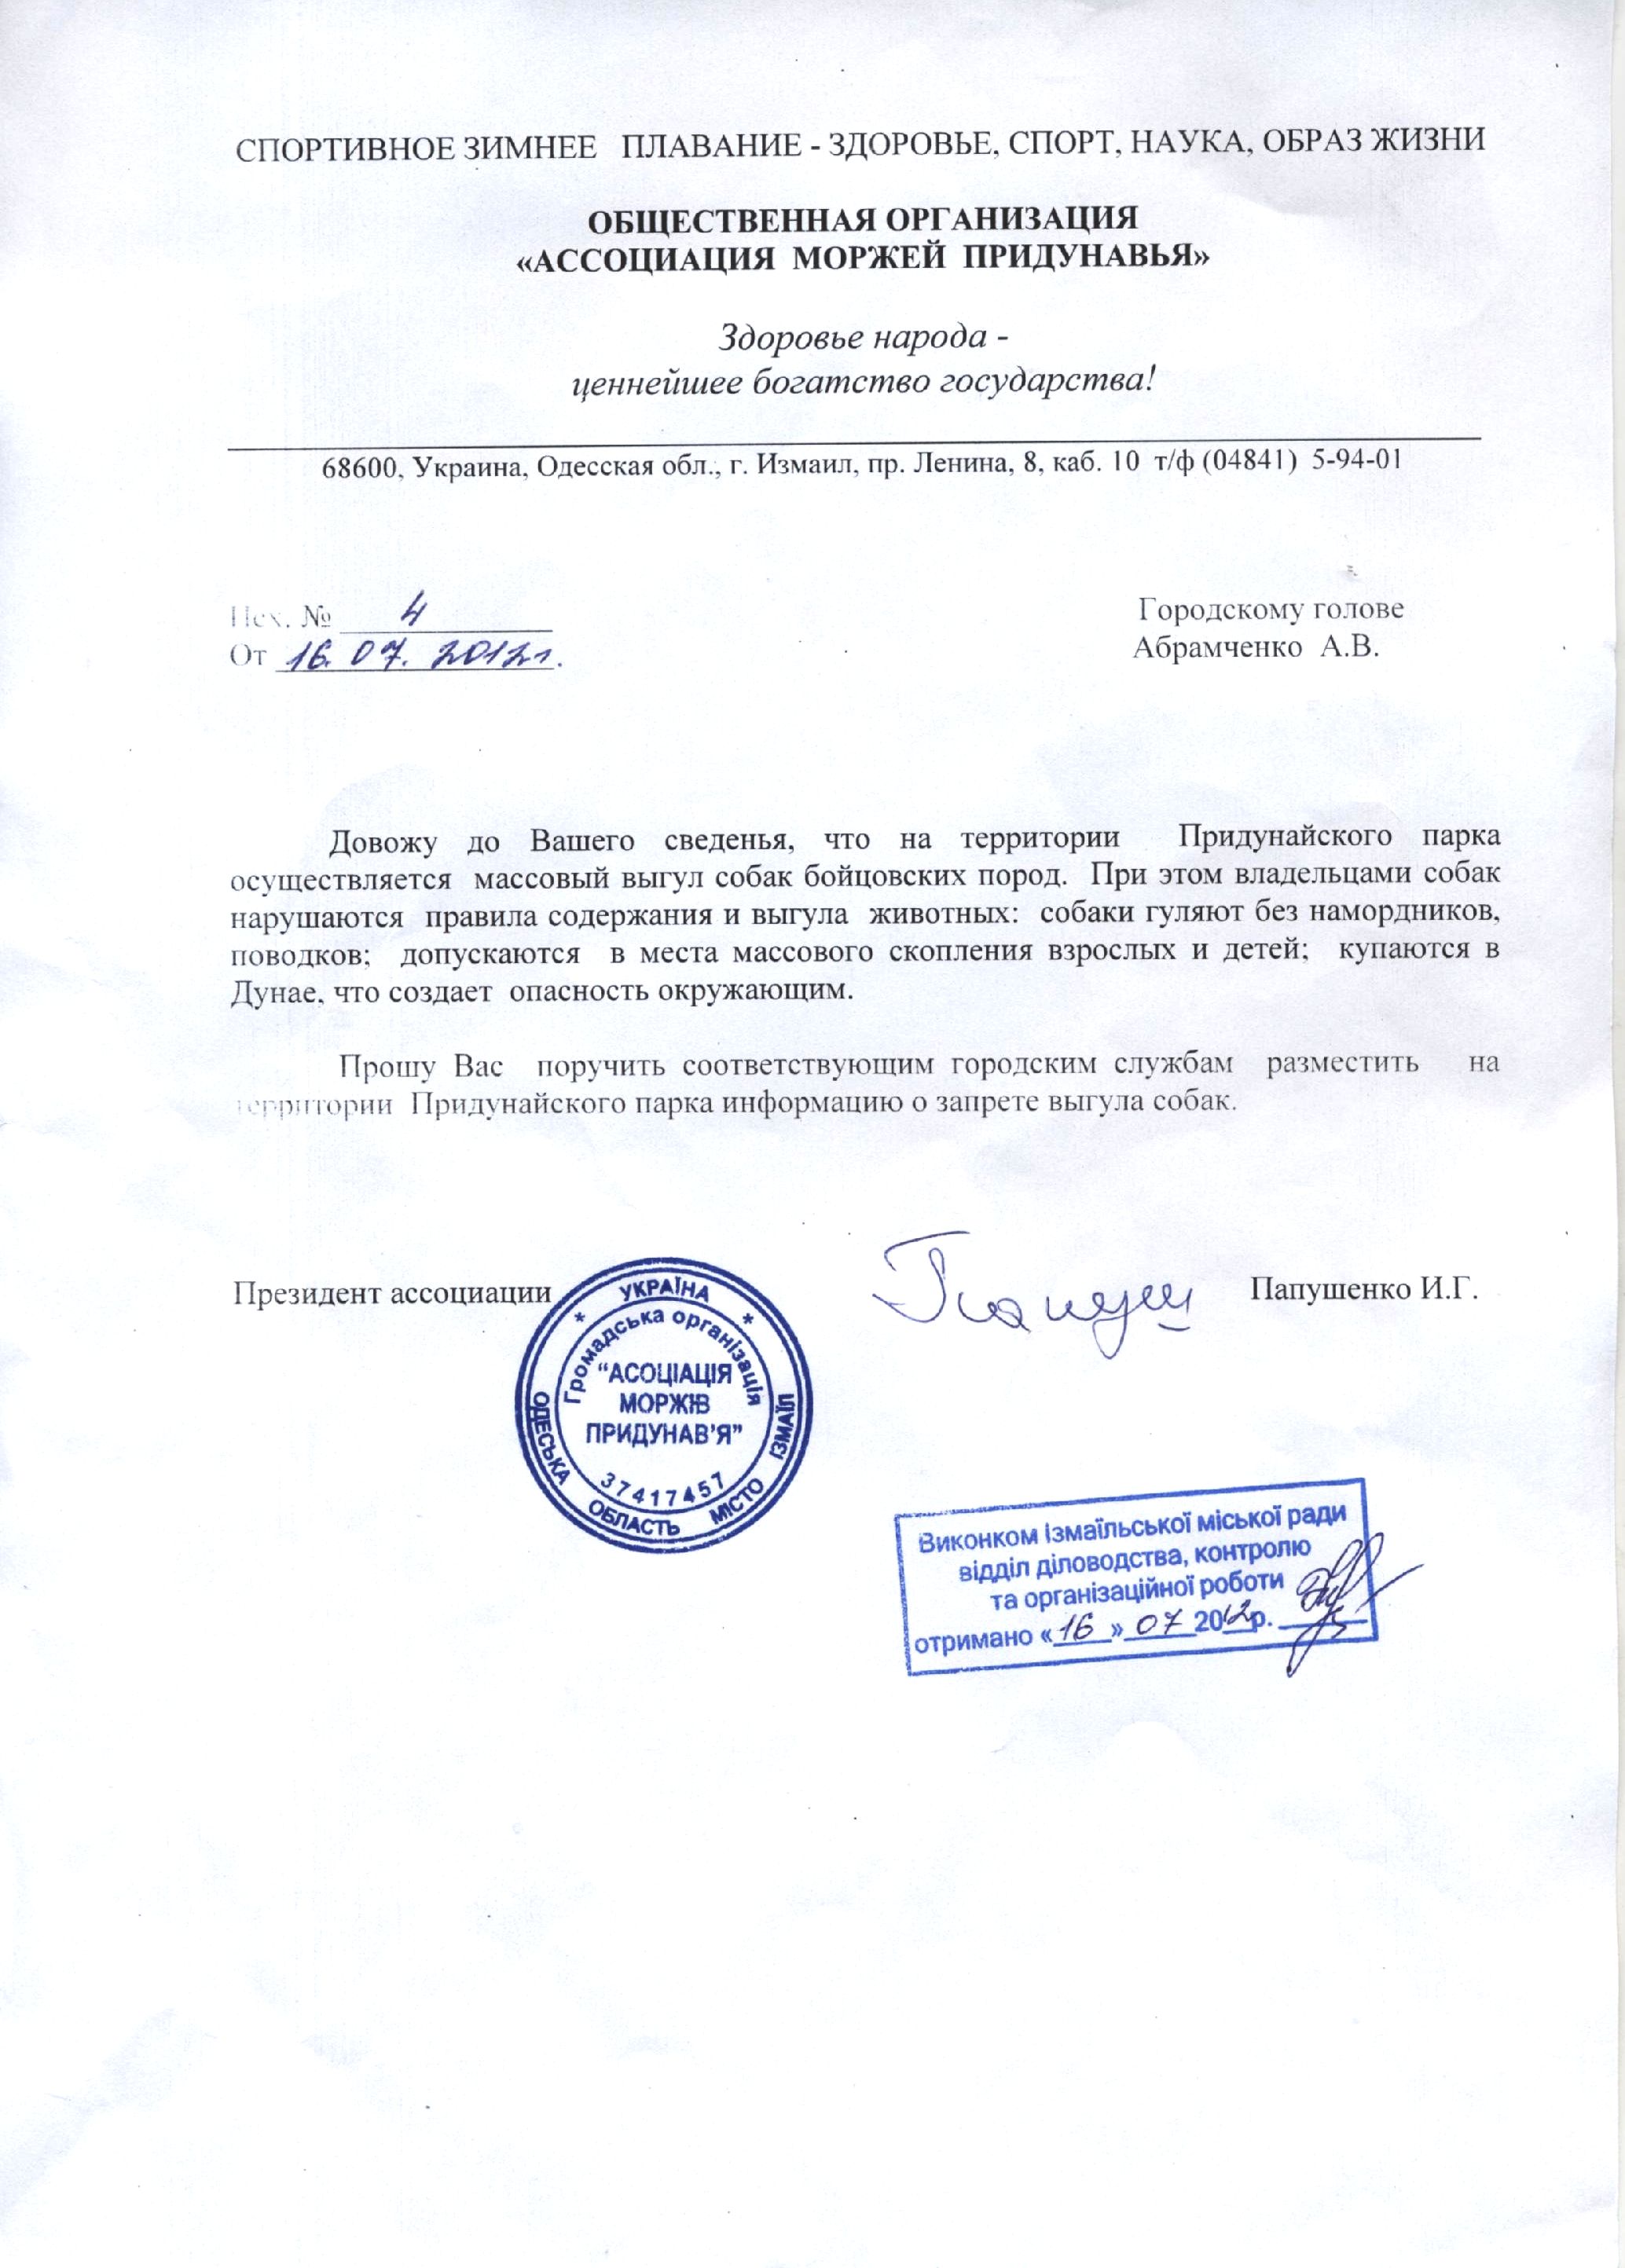 Измаил: Ассоциация моржей Придунавья просит помощи у А.В. Абрамченко. (обновленно, ВИДЕО)